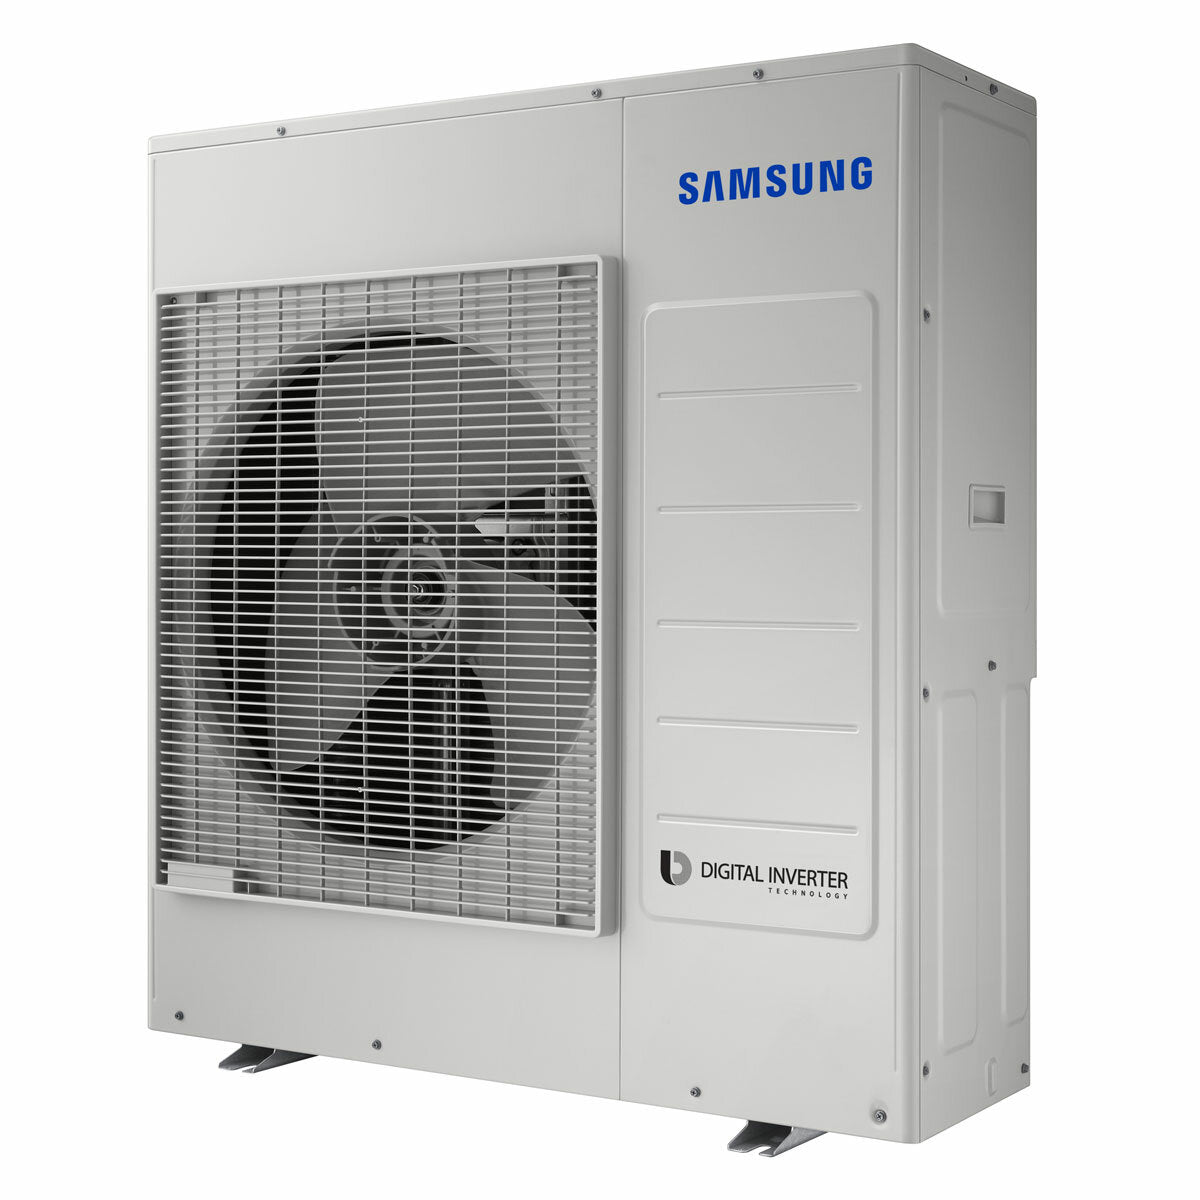 Samsung windfree Klimaanlage Avant Penta Split 7000 + 7000 + 7000 + 12000 + 12000 BTU Inverter A++ WLAN Außengerät 10,0 kW